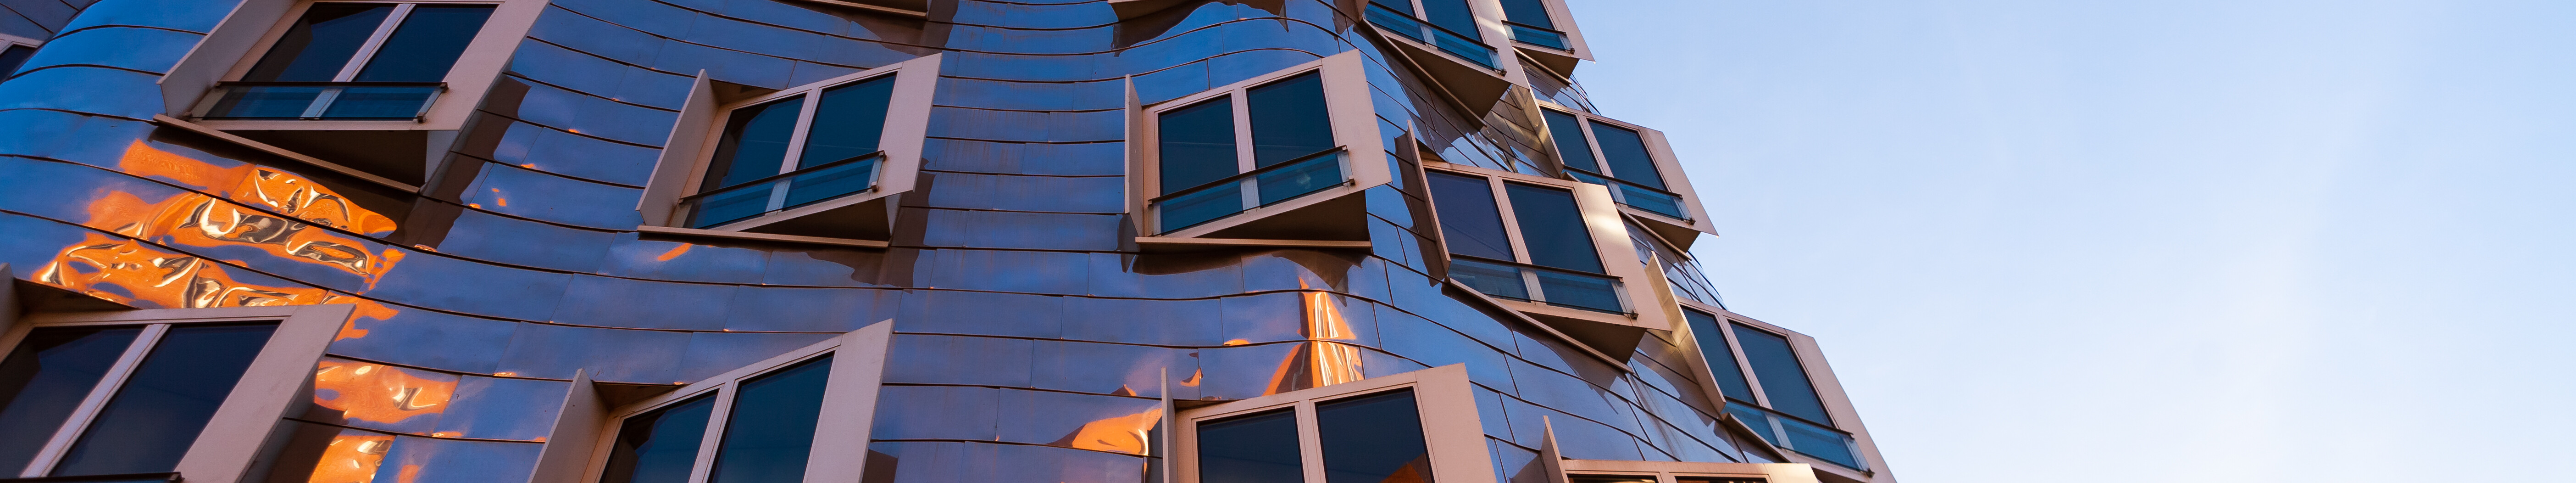 Glänzende Gebäudefassade des Star-Architekten Frank Gehry im Medienhafen Düsseldorf. © Tourismus NRW e.V.